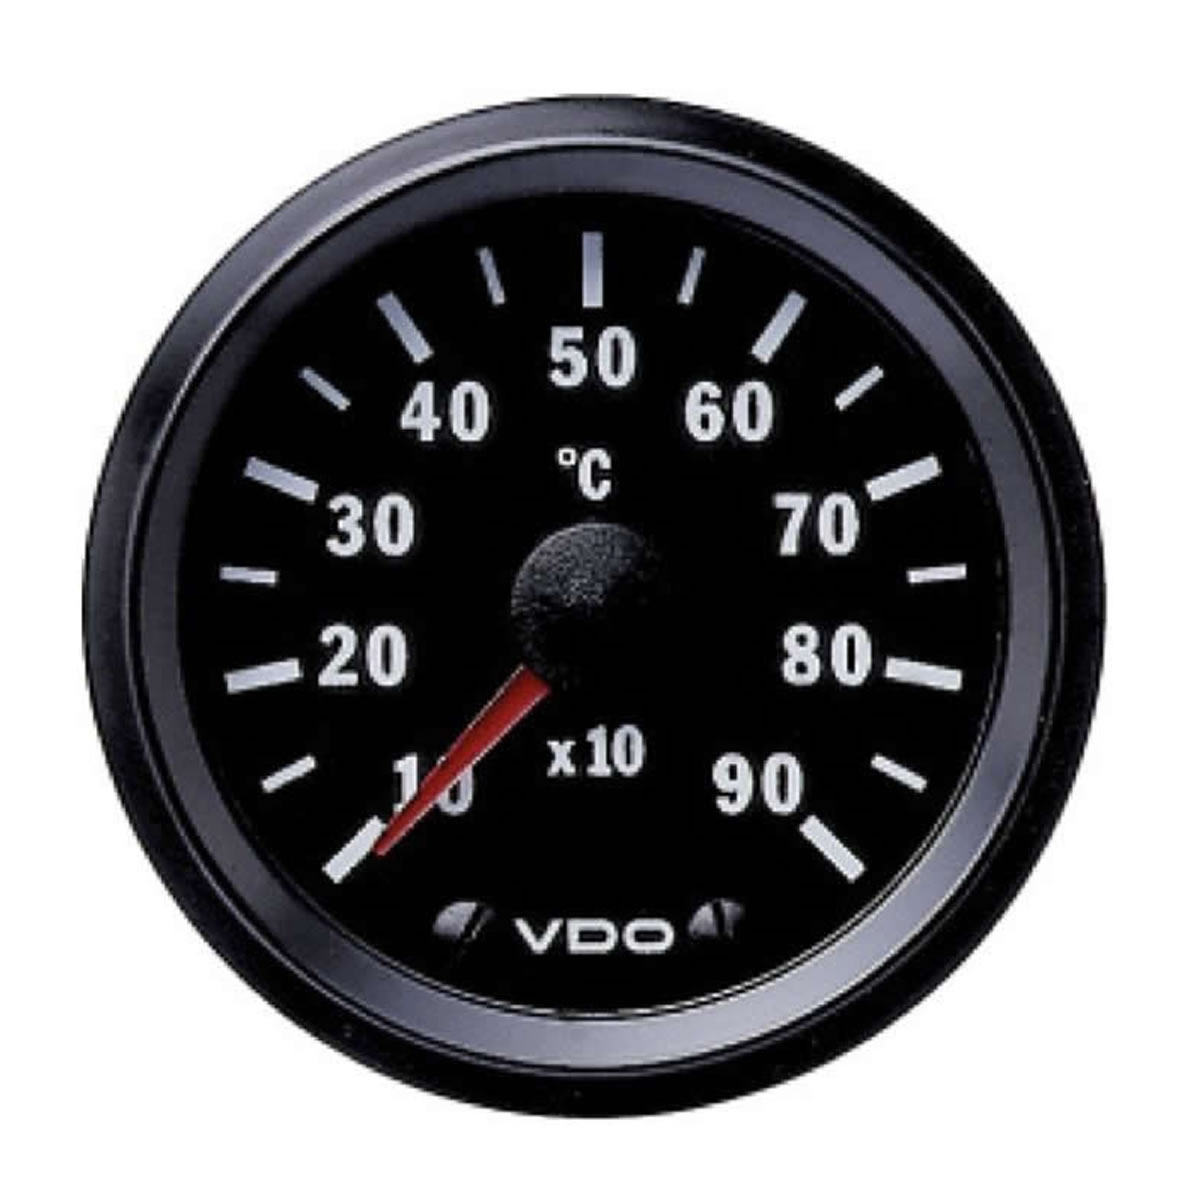 VDO Exhaust temperature Gauges 900C 52mm